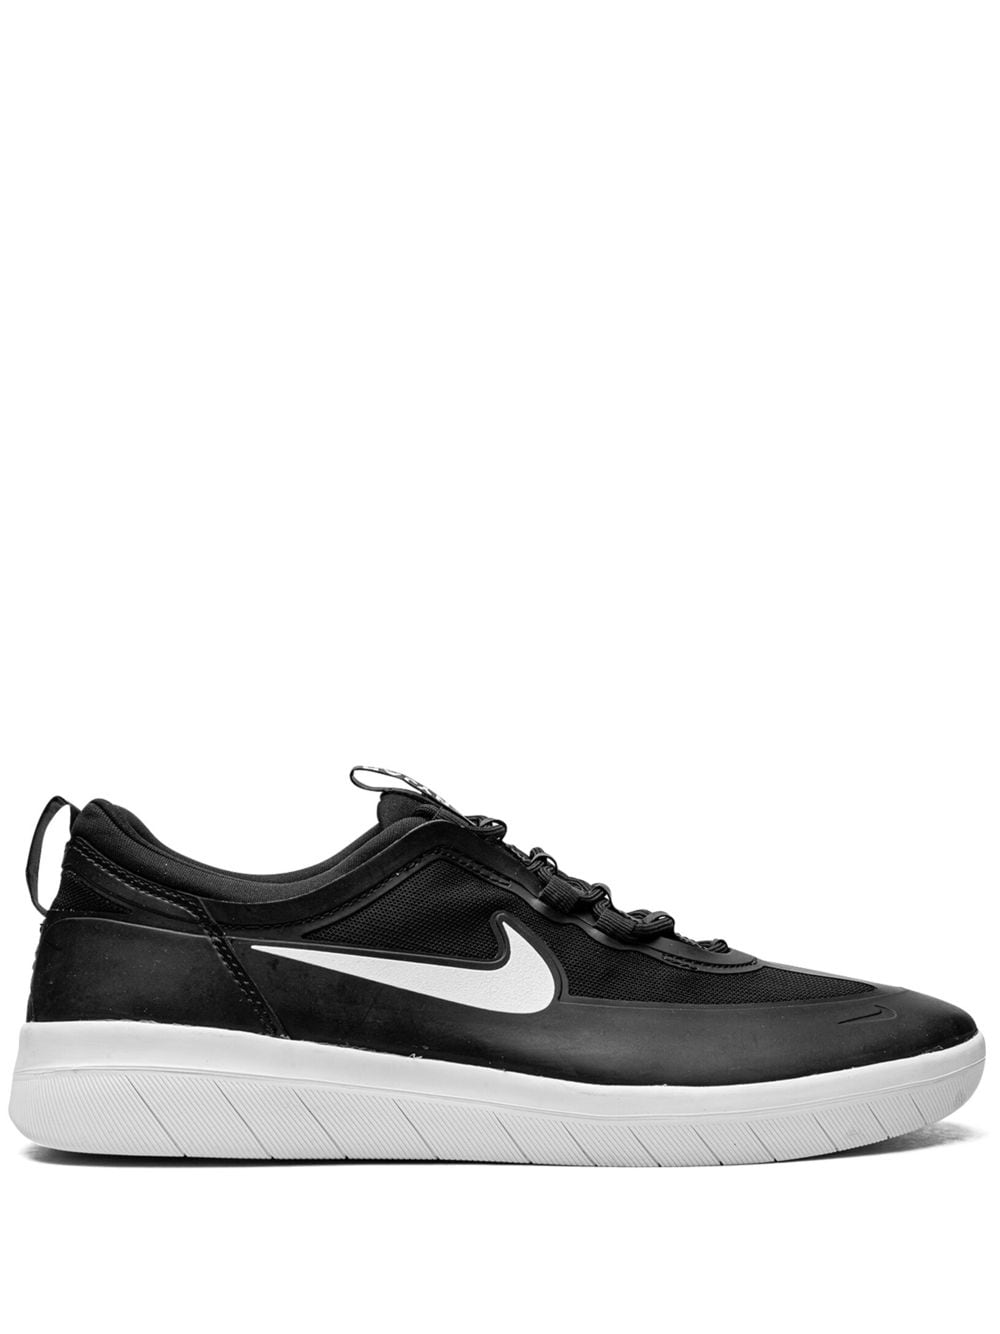 Nike Sb Nyjah Free 2.0 Sneakers In Black